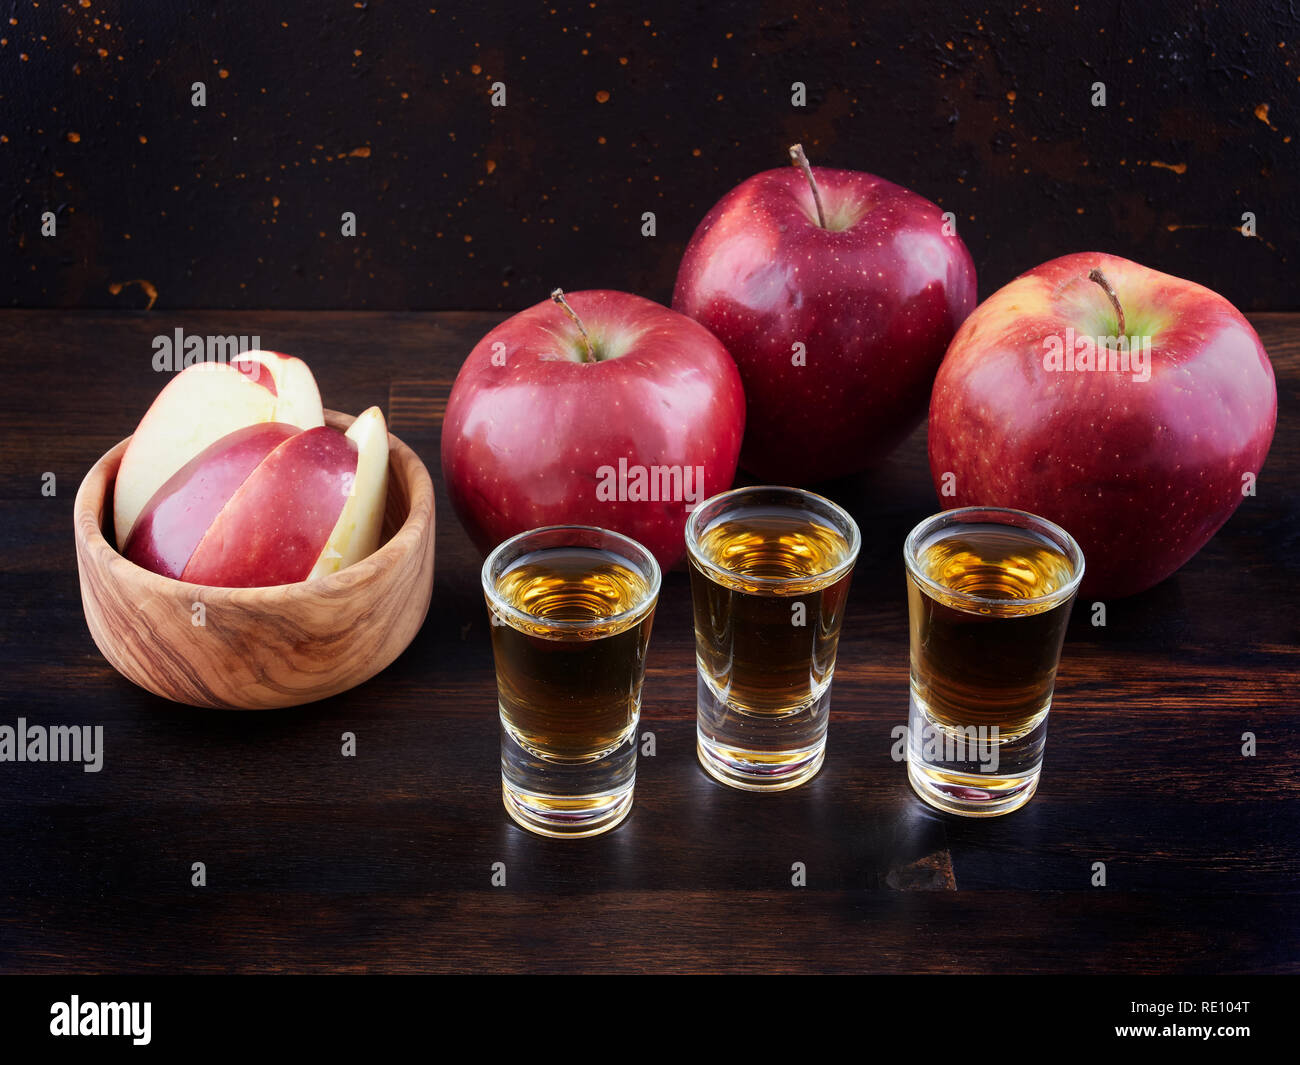 De pomme ou le Calvados et pommes rouges, sur une planche en bois foncé, avec un fond brun foncé Banque D'Images